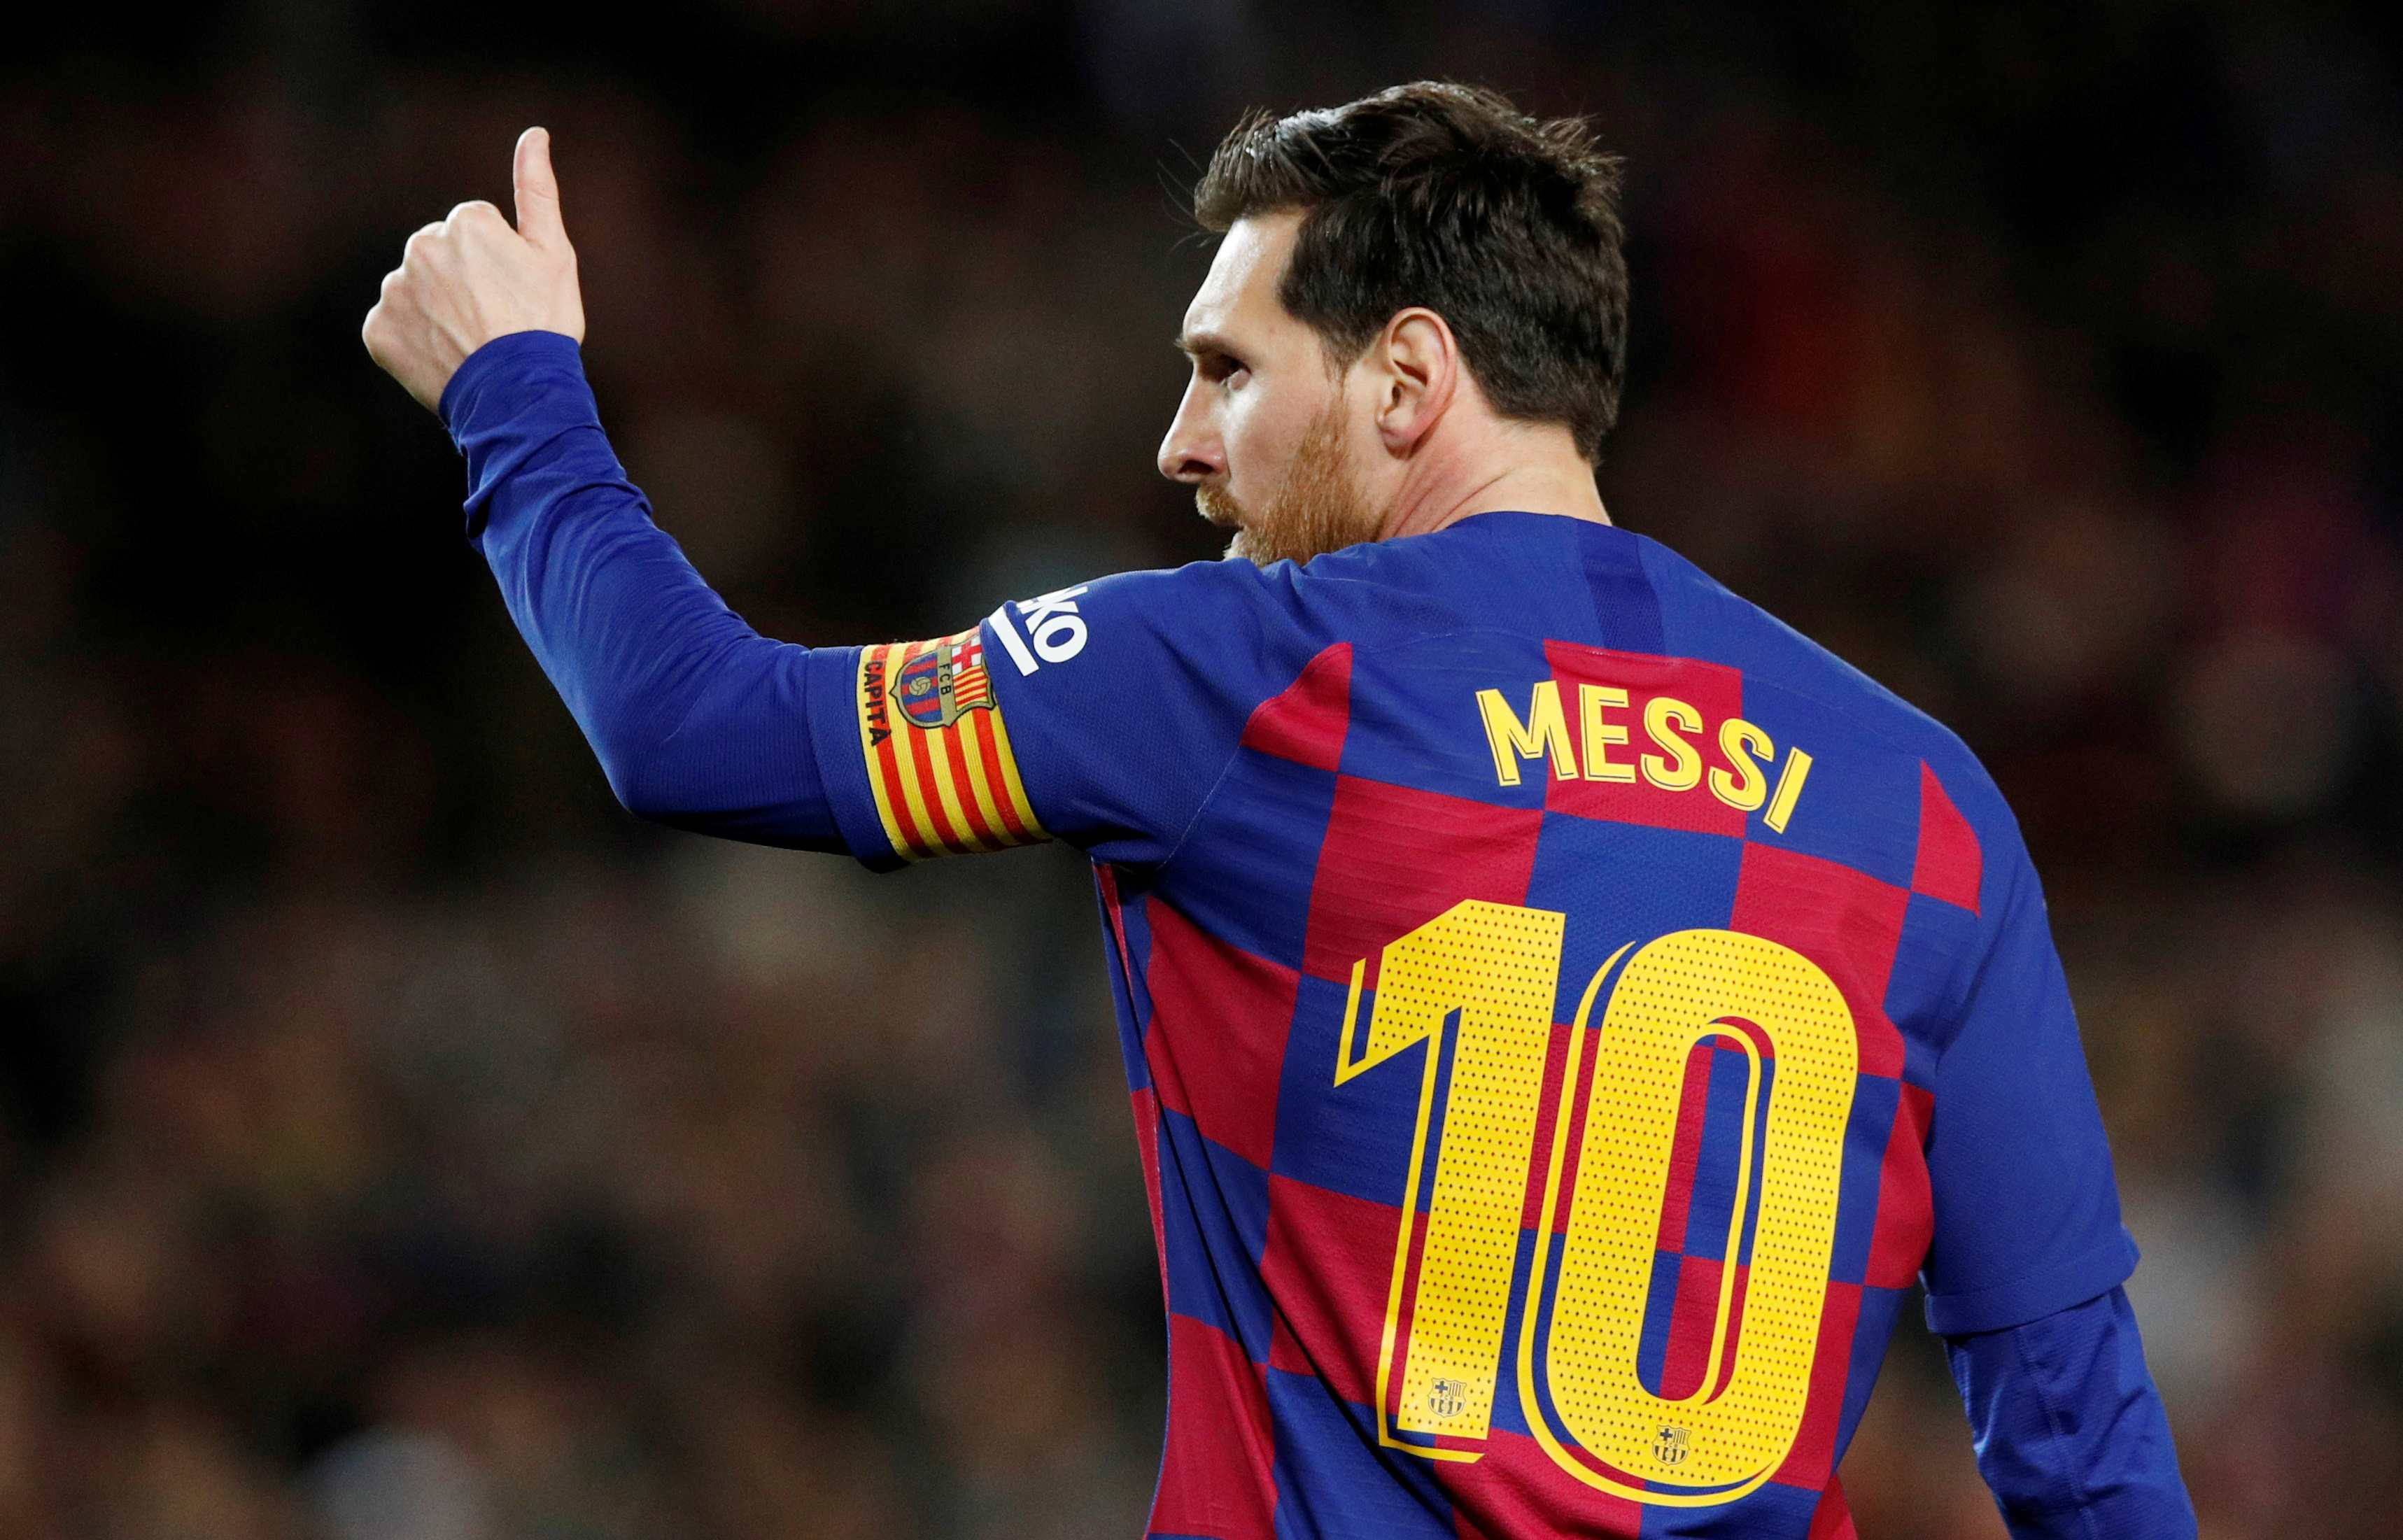 Truyền hình Pháp vừa chính thức xác nhận rằng siêu sao Lionel Messi đã gia nhập đội bóng. Những ai muốn xem anh ấy sánh vai cùng các ngôi sao hàng đầu thế giới hãy đến đây để chiêm ngưỡng hình ảnh sắc nét và đầy sống động.